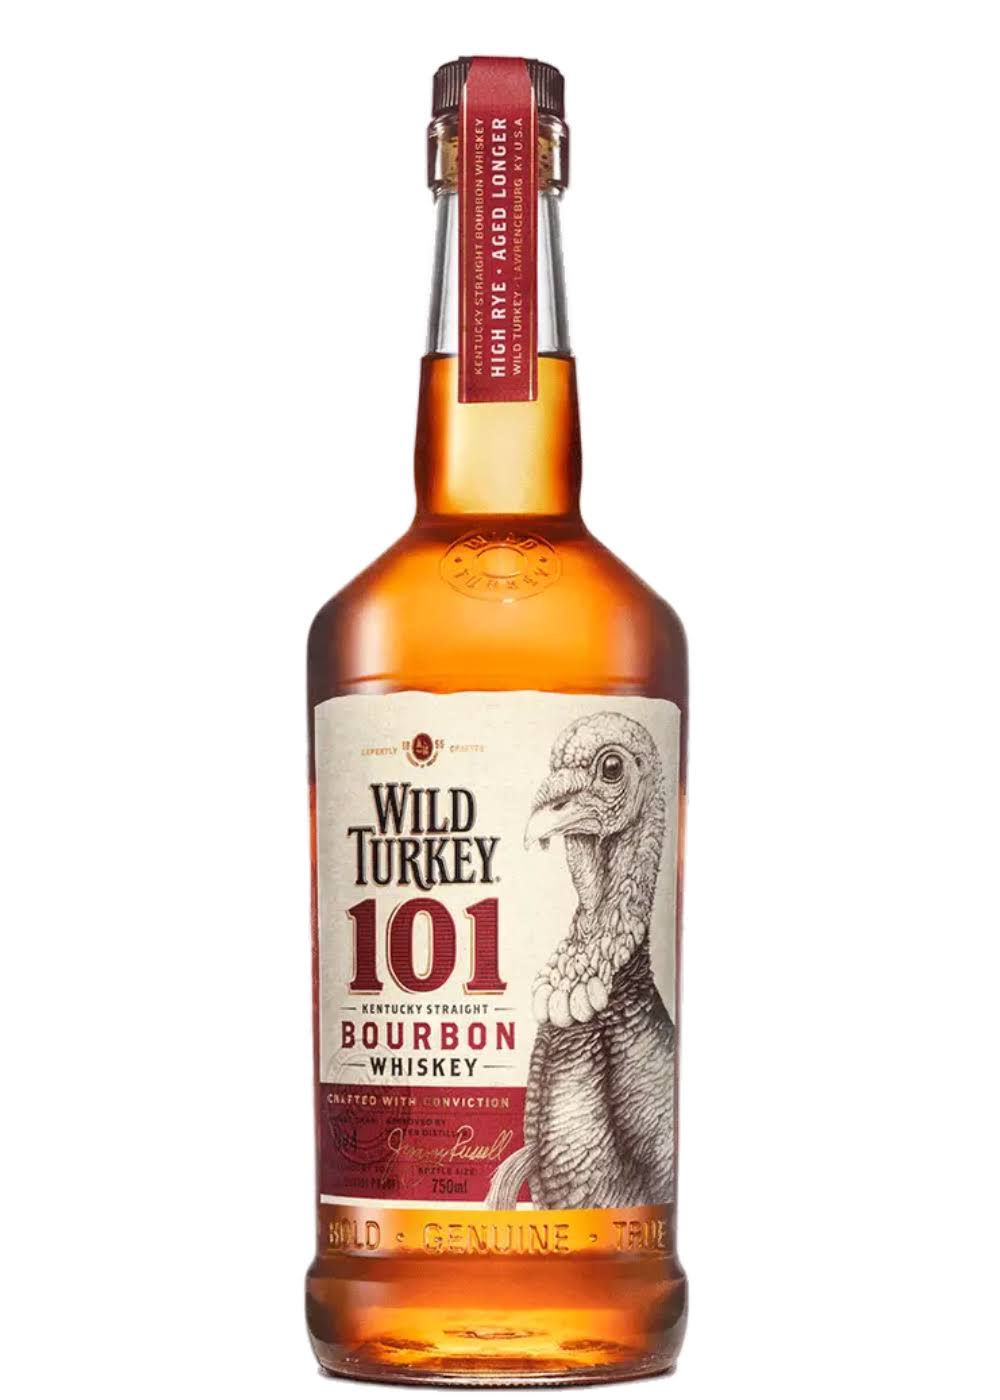 Wild Turkey Whiskey, Kentucky Straight Bourbon, 101 - 375 ml